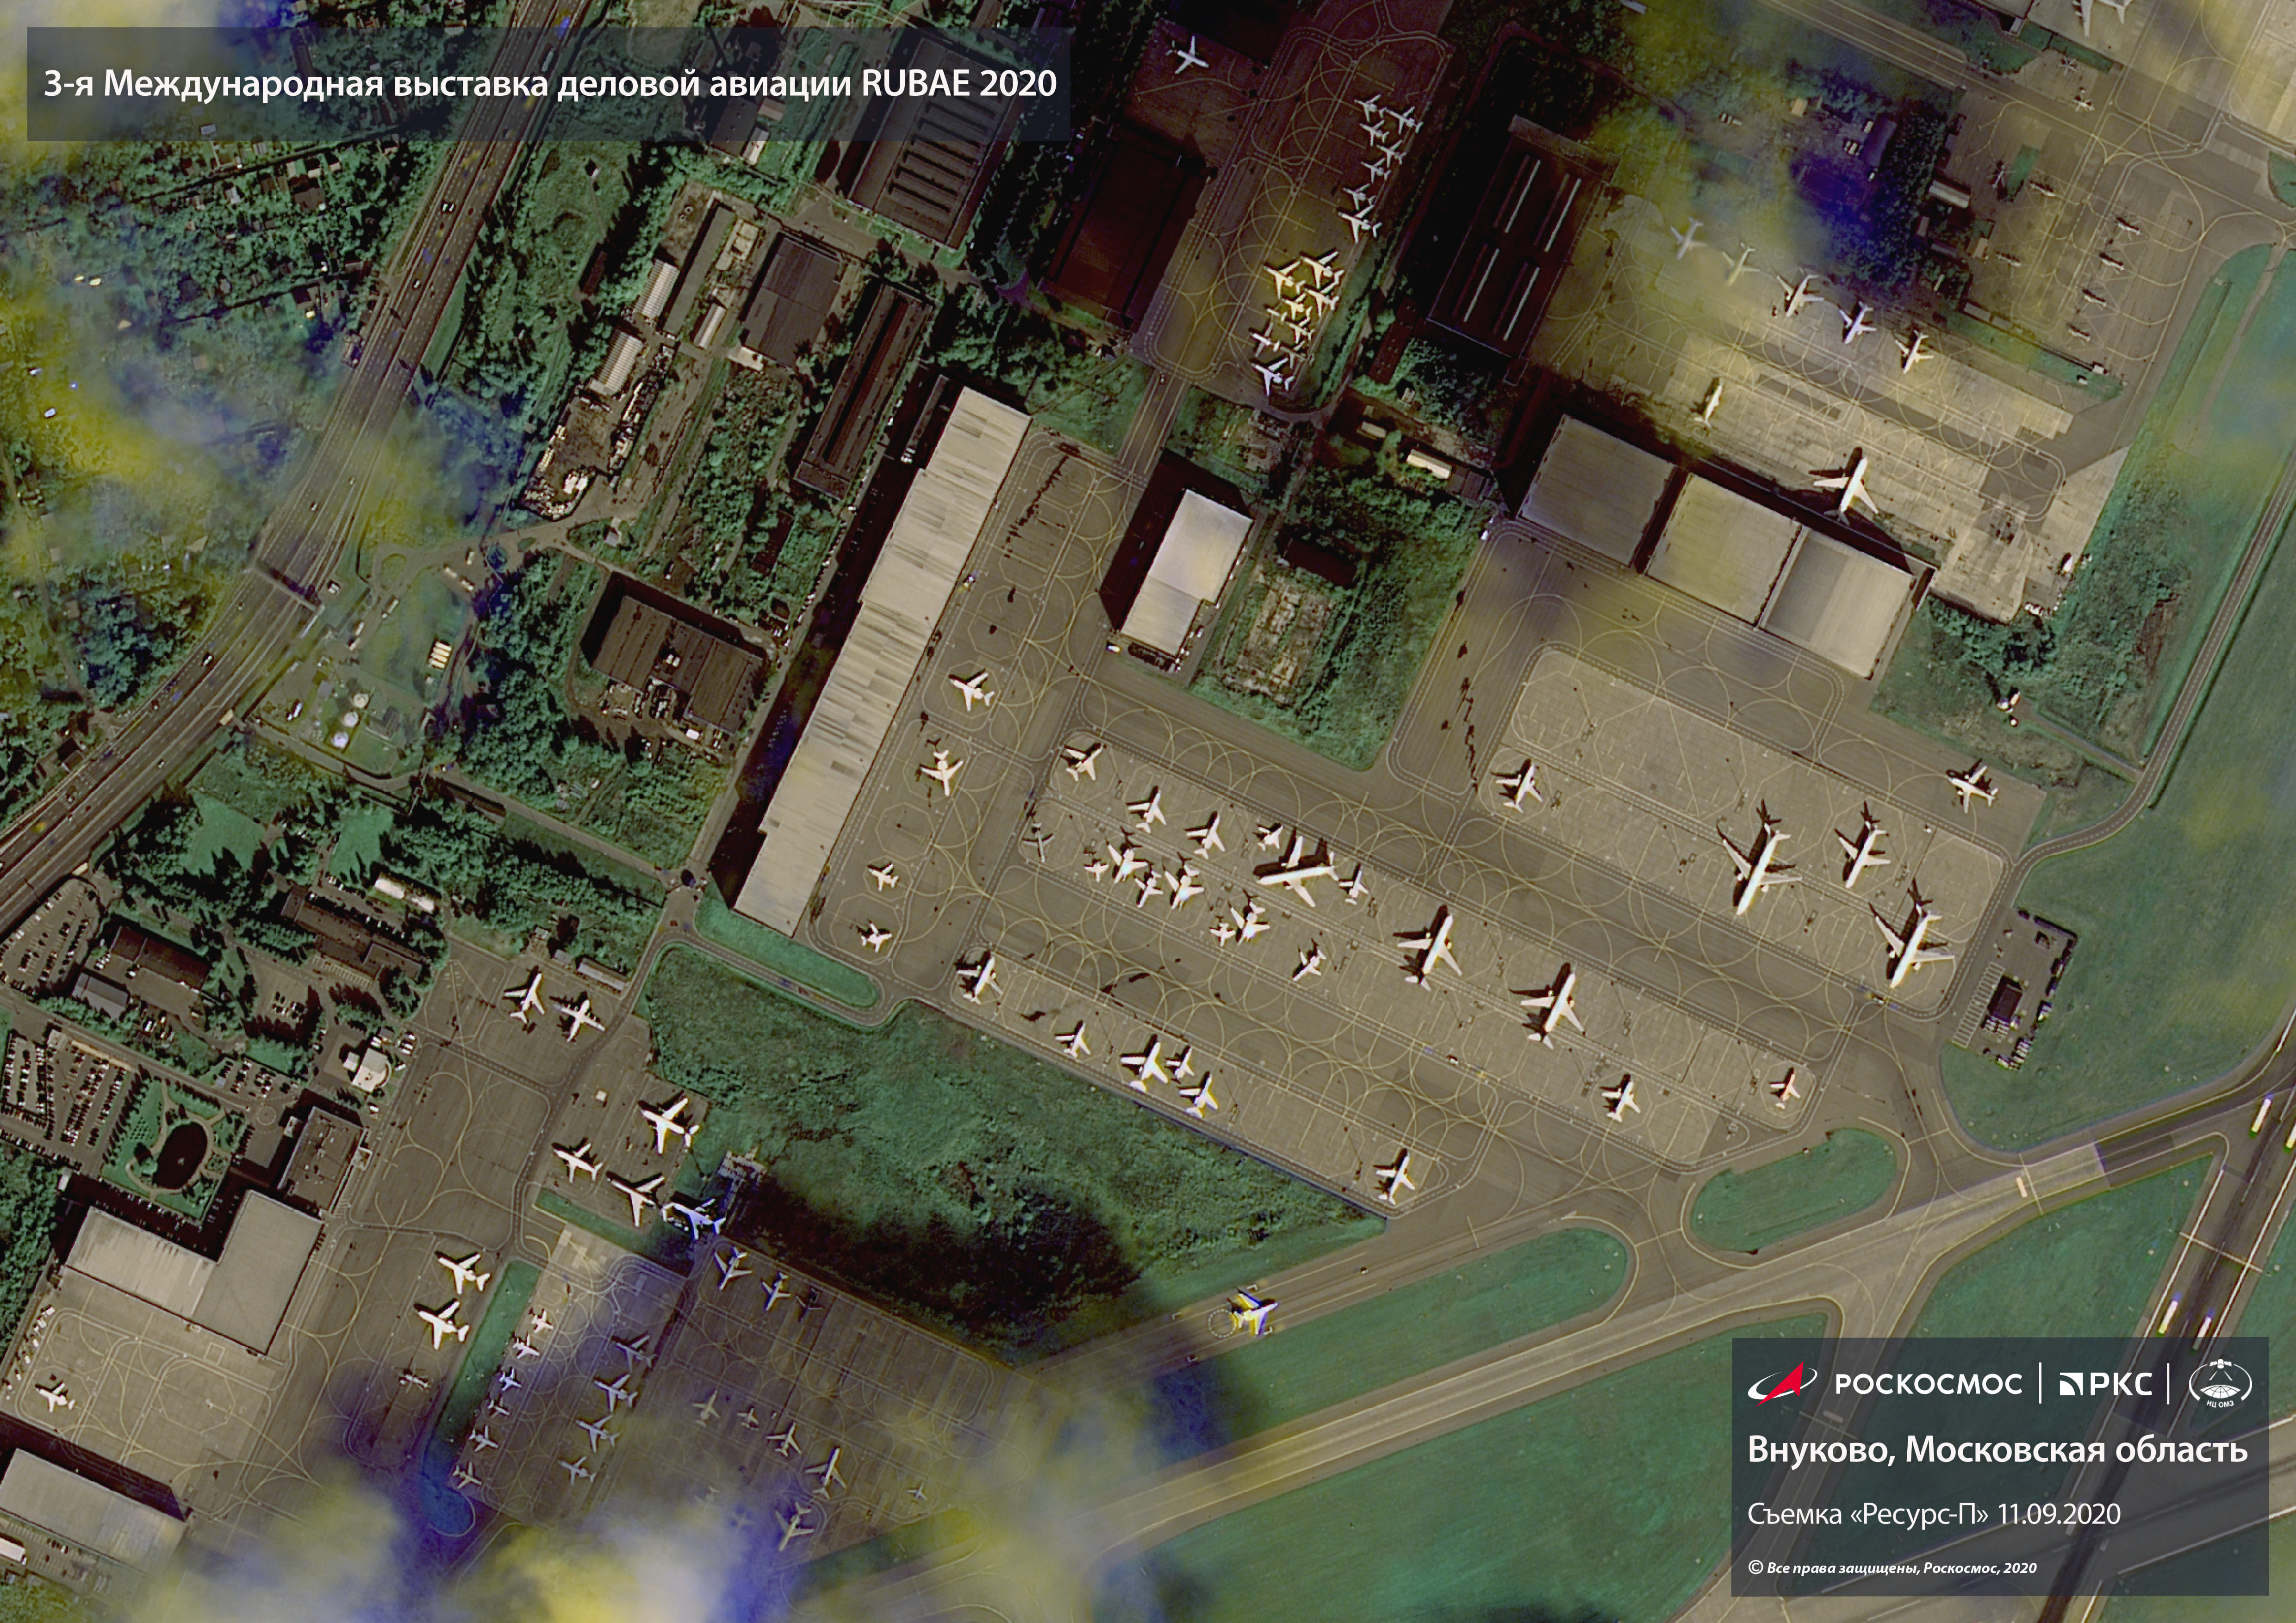 Александров в реальном времени. Снимки со спутника. Снимок местности со спутника. Спутники наблюдения. Спутниковые снимки в реальном времени.